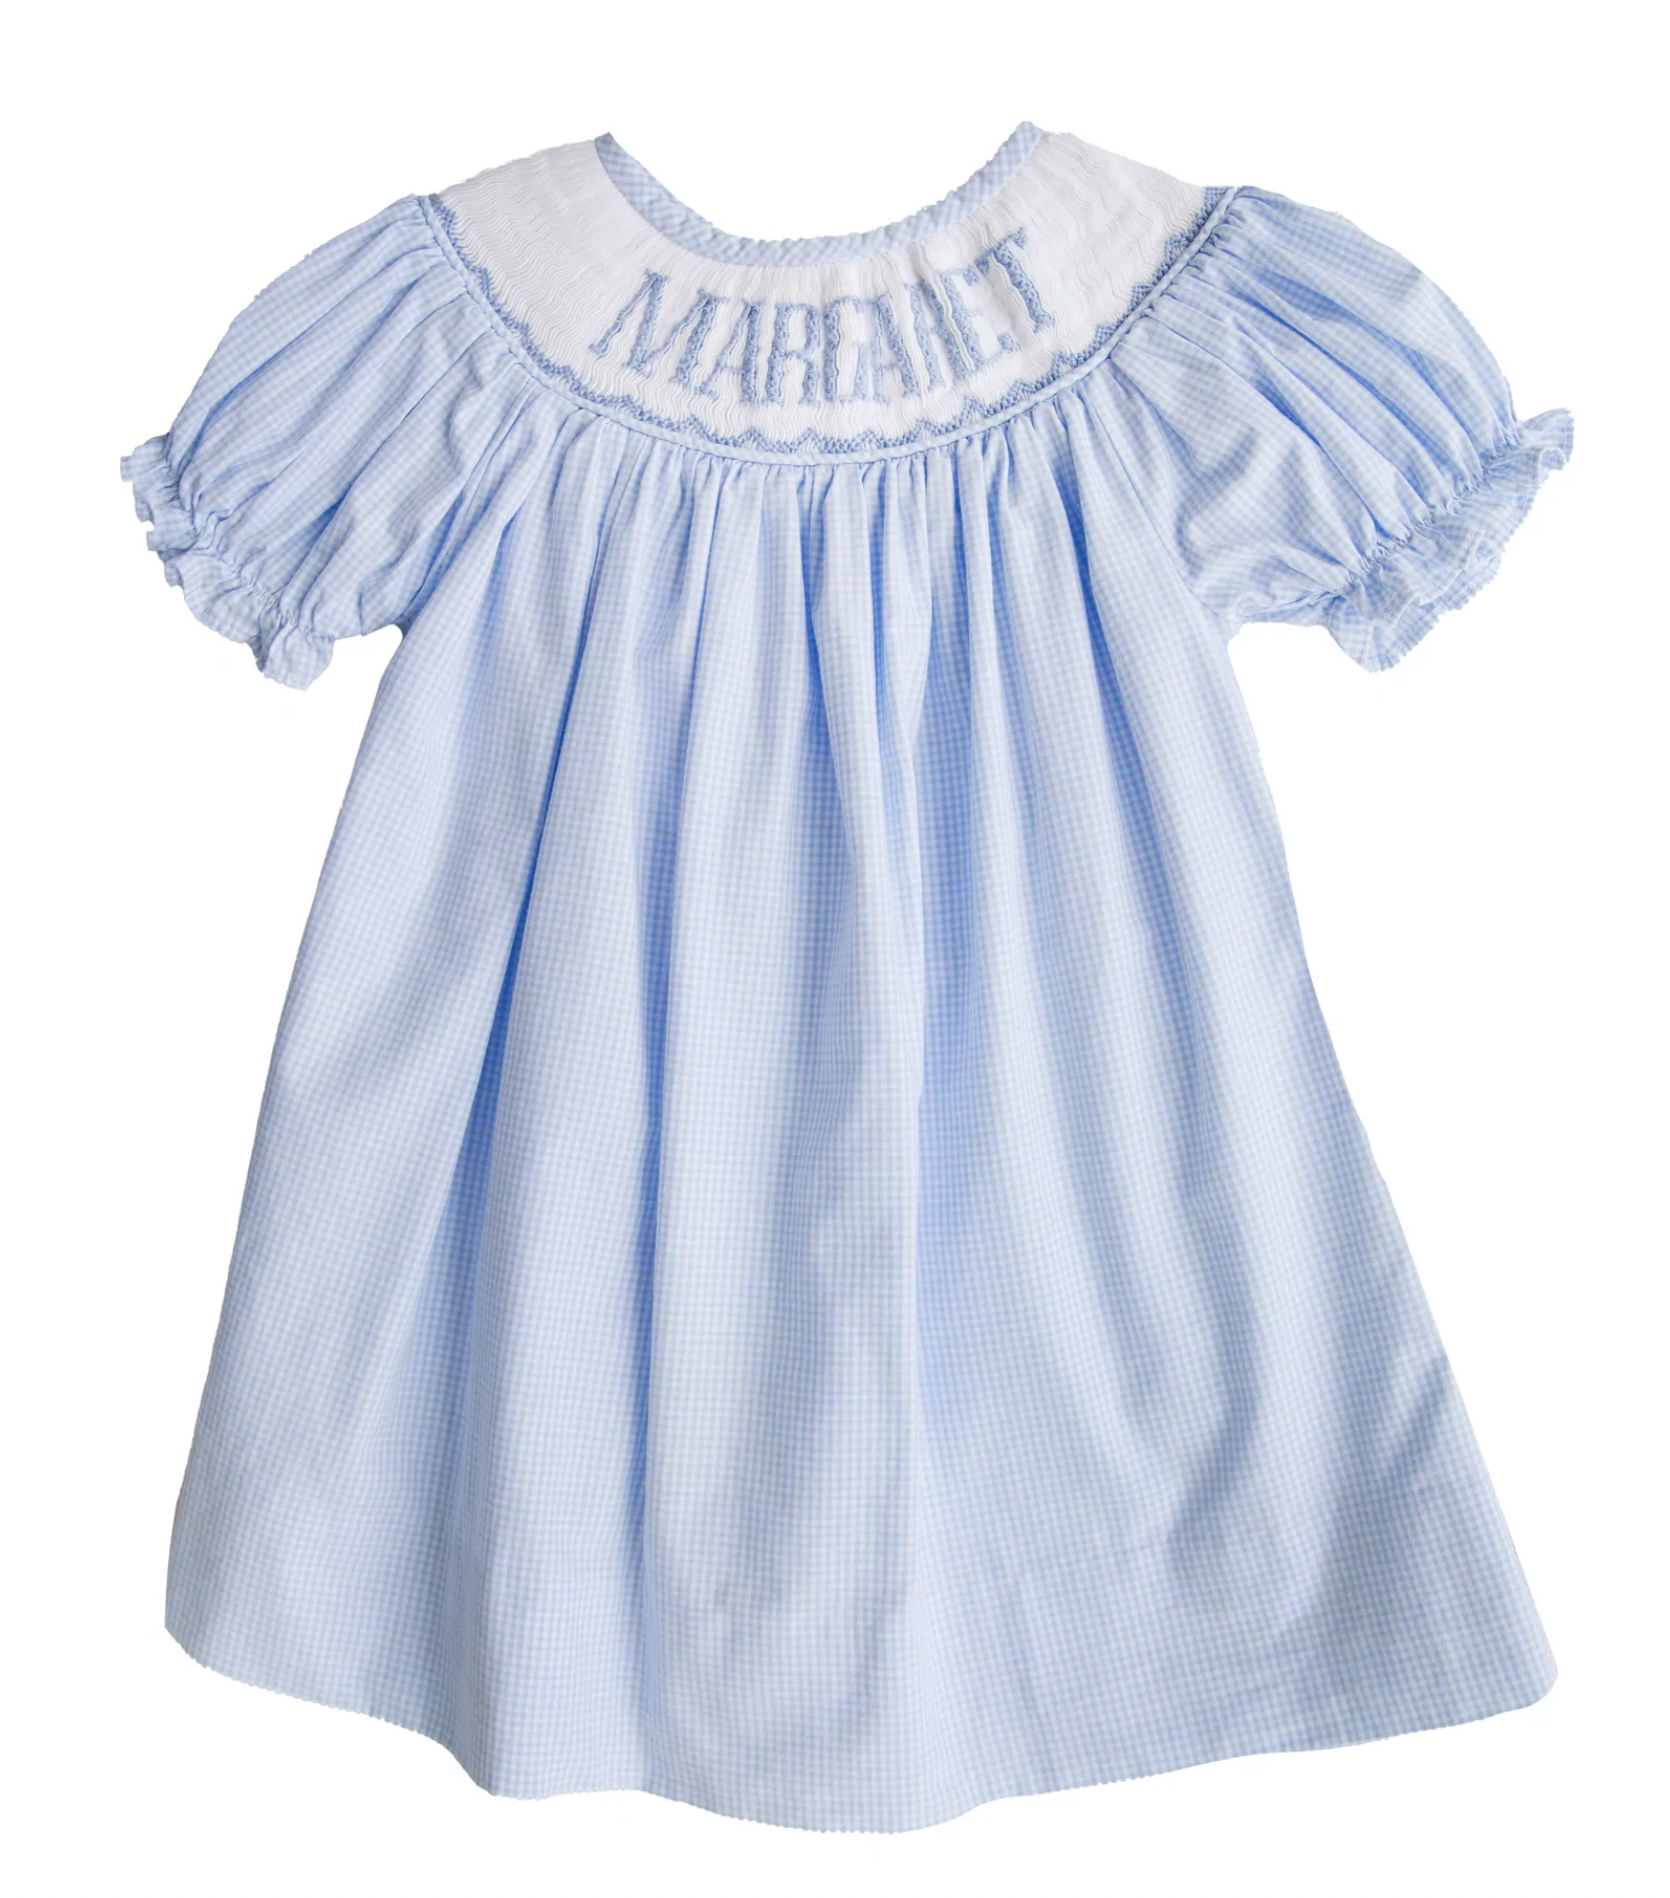 Custom Smocked Name Blue Girls Dress – Baby Braithwaite